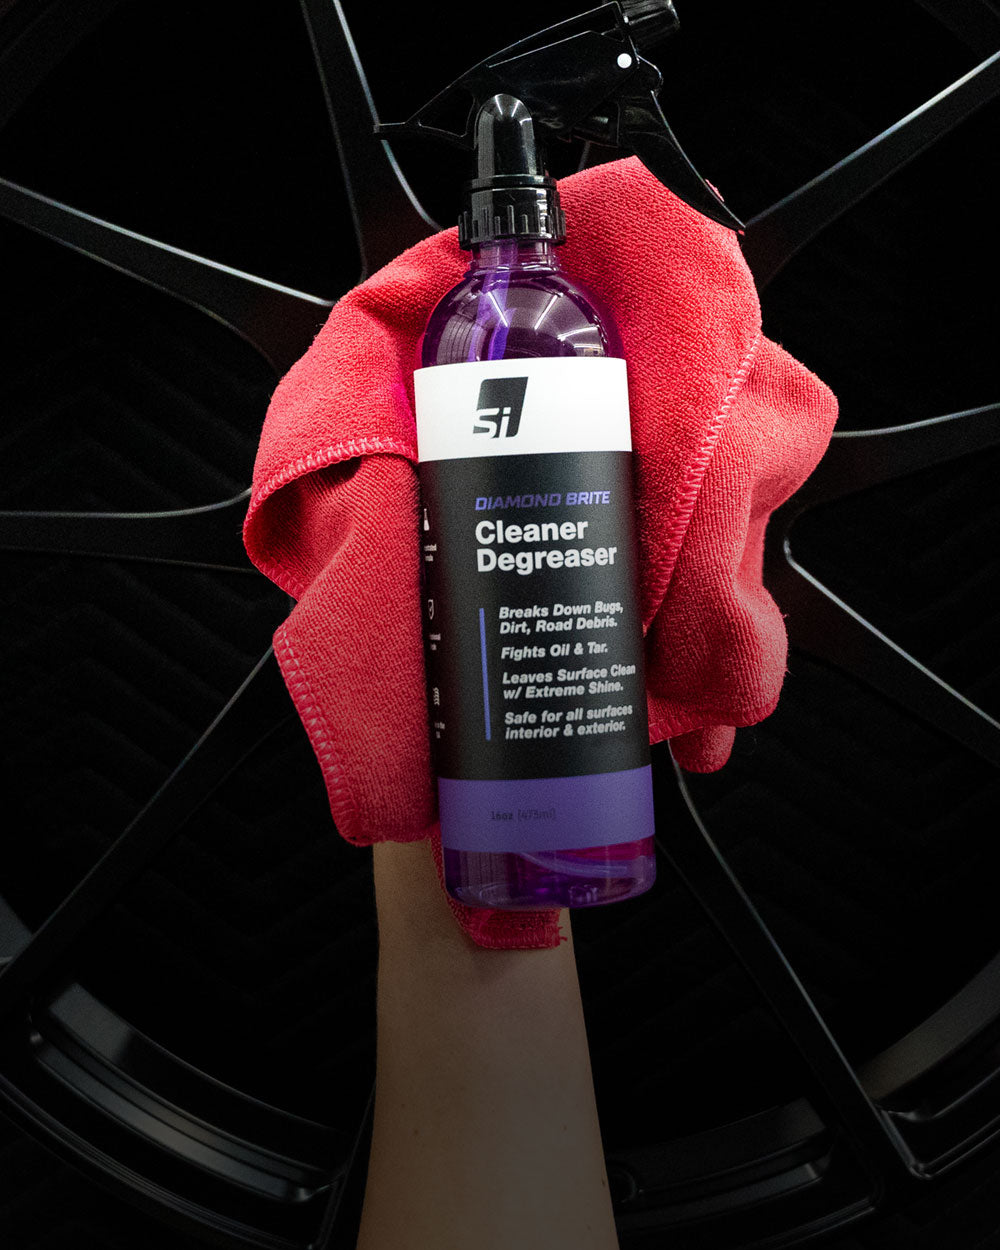 Show Shine Detail Spray – Superior Image Car Care